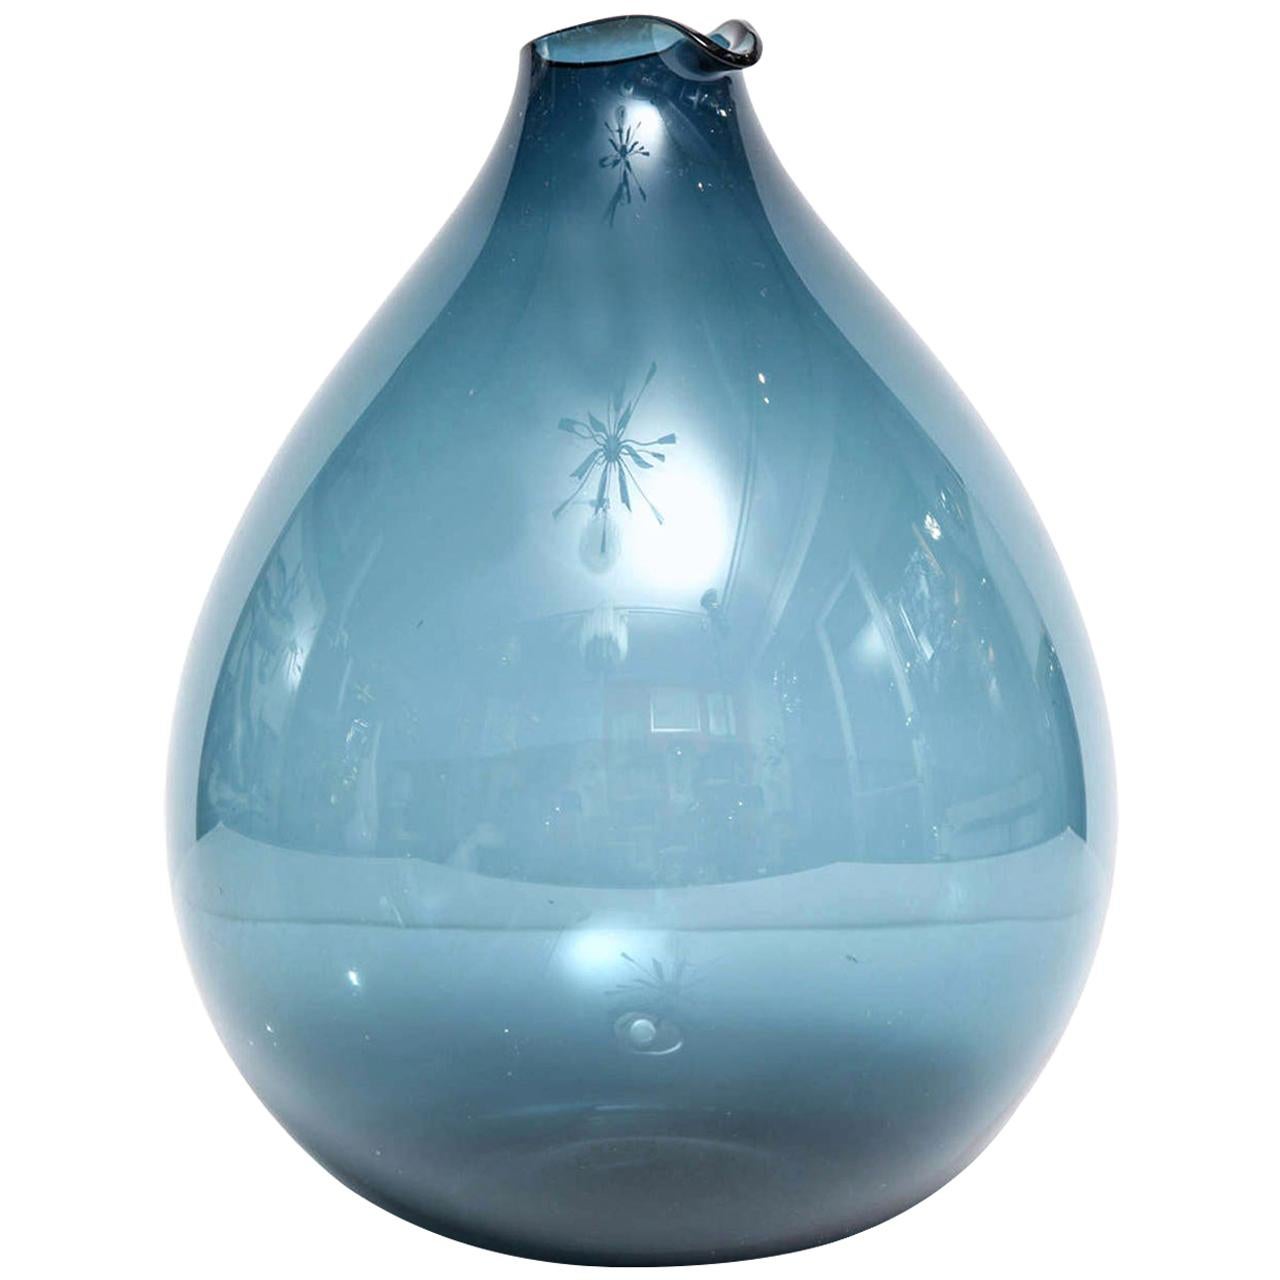 Vase by Timo Sarpaneva, Scandinavian, Blue, Hand Blown Glass, circa 1960